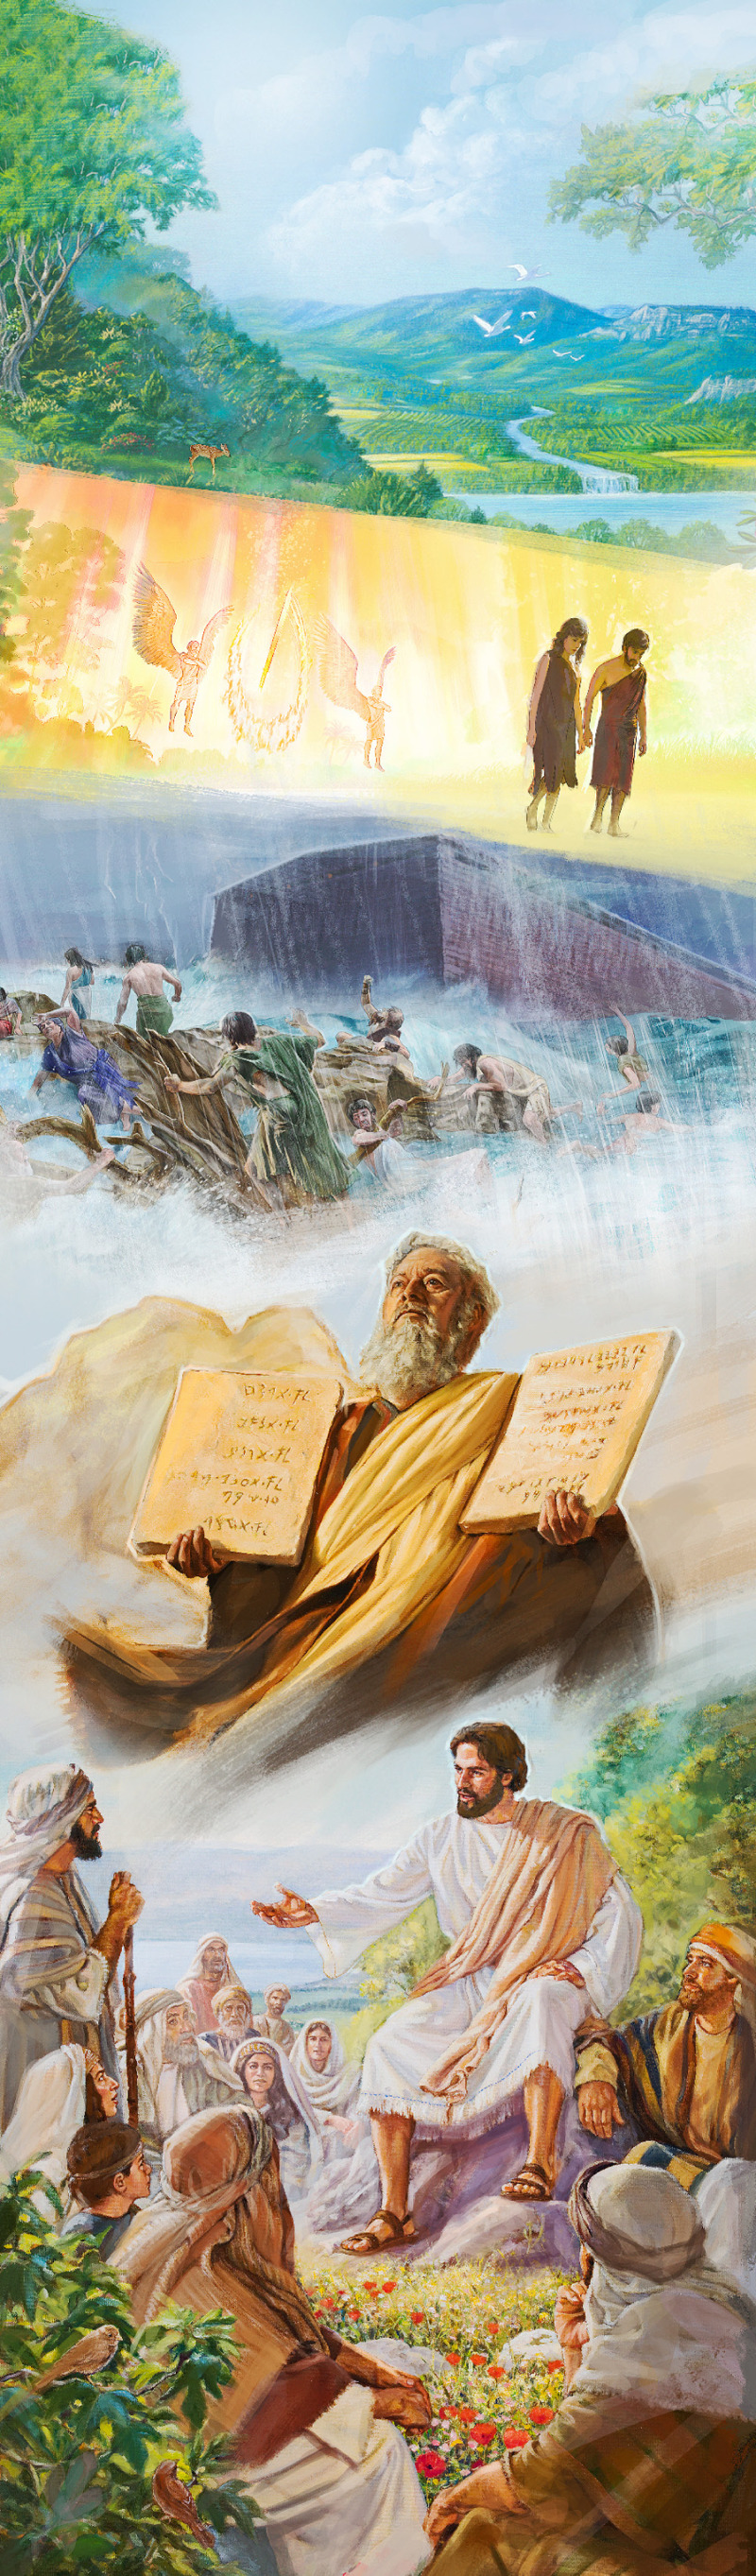 El Paraíso original, Adán y Eva echados del Paraíso, el Diluvio de los días de Noé, Moisés con los Diez Mandamientos y Jesús enseñando a otros.